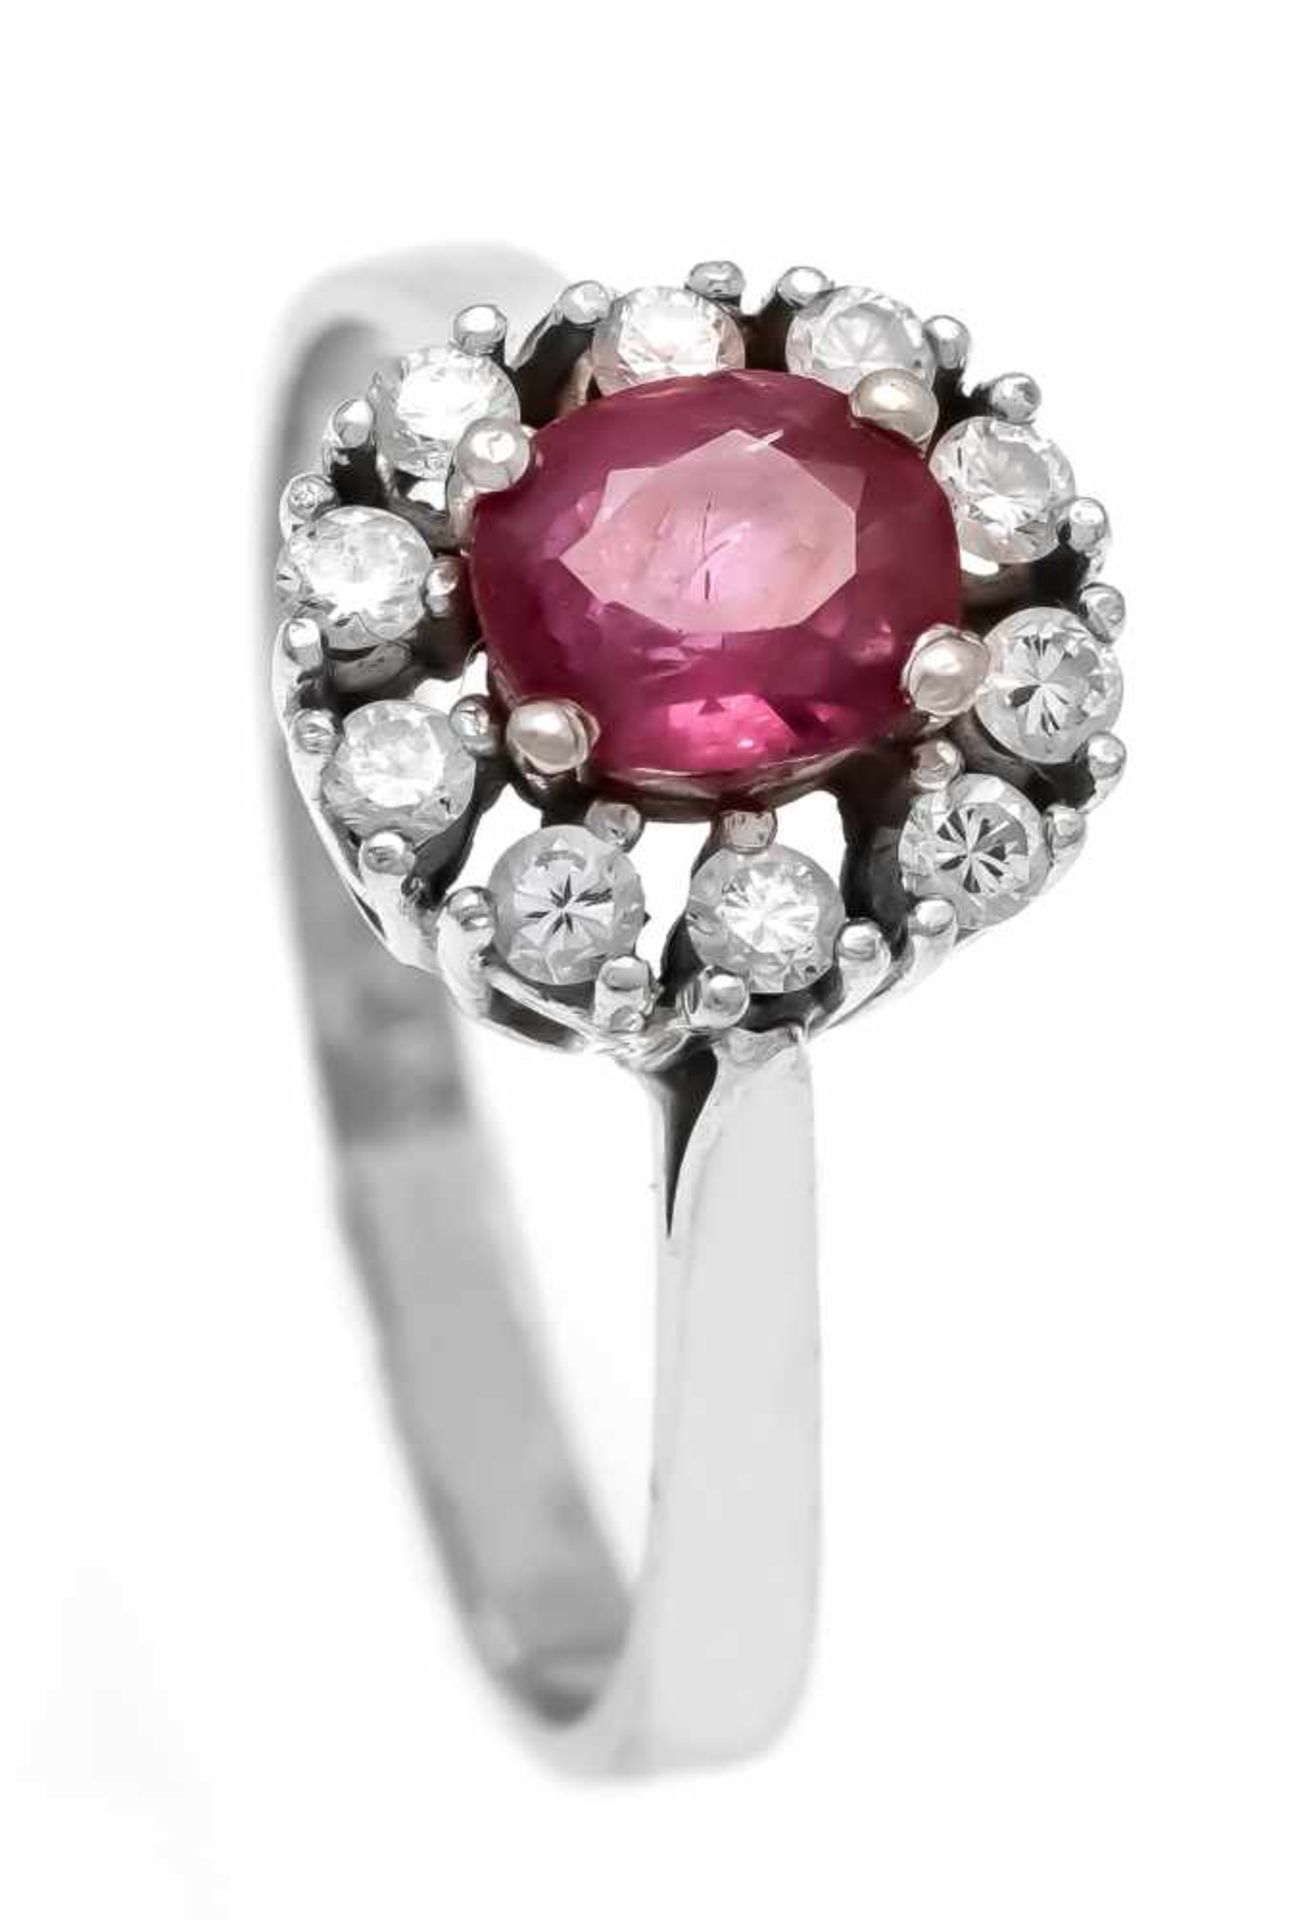 Rubin-Brillant-Ring WG 585/000 mit einem oval fac. Rubin 6 x 4 mm und 10 Diamanten, zus.0,20 ct W/